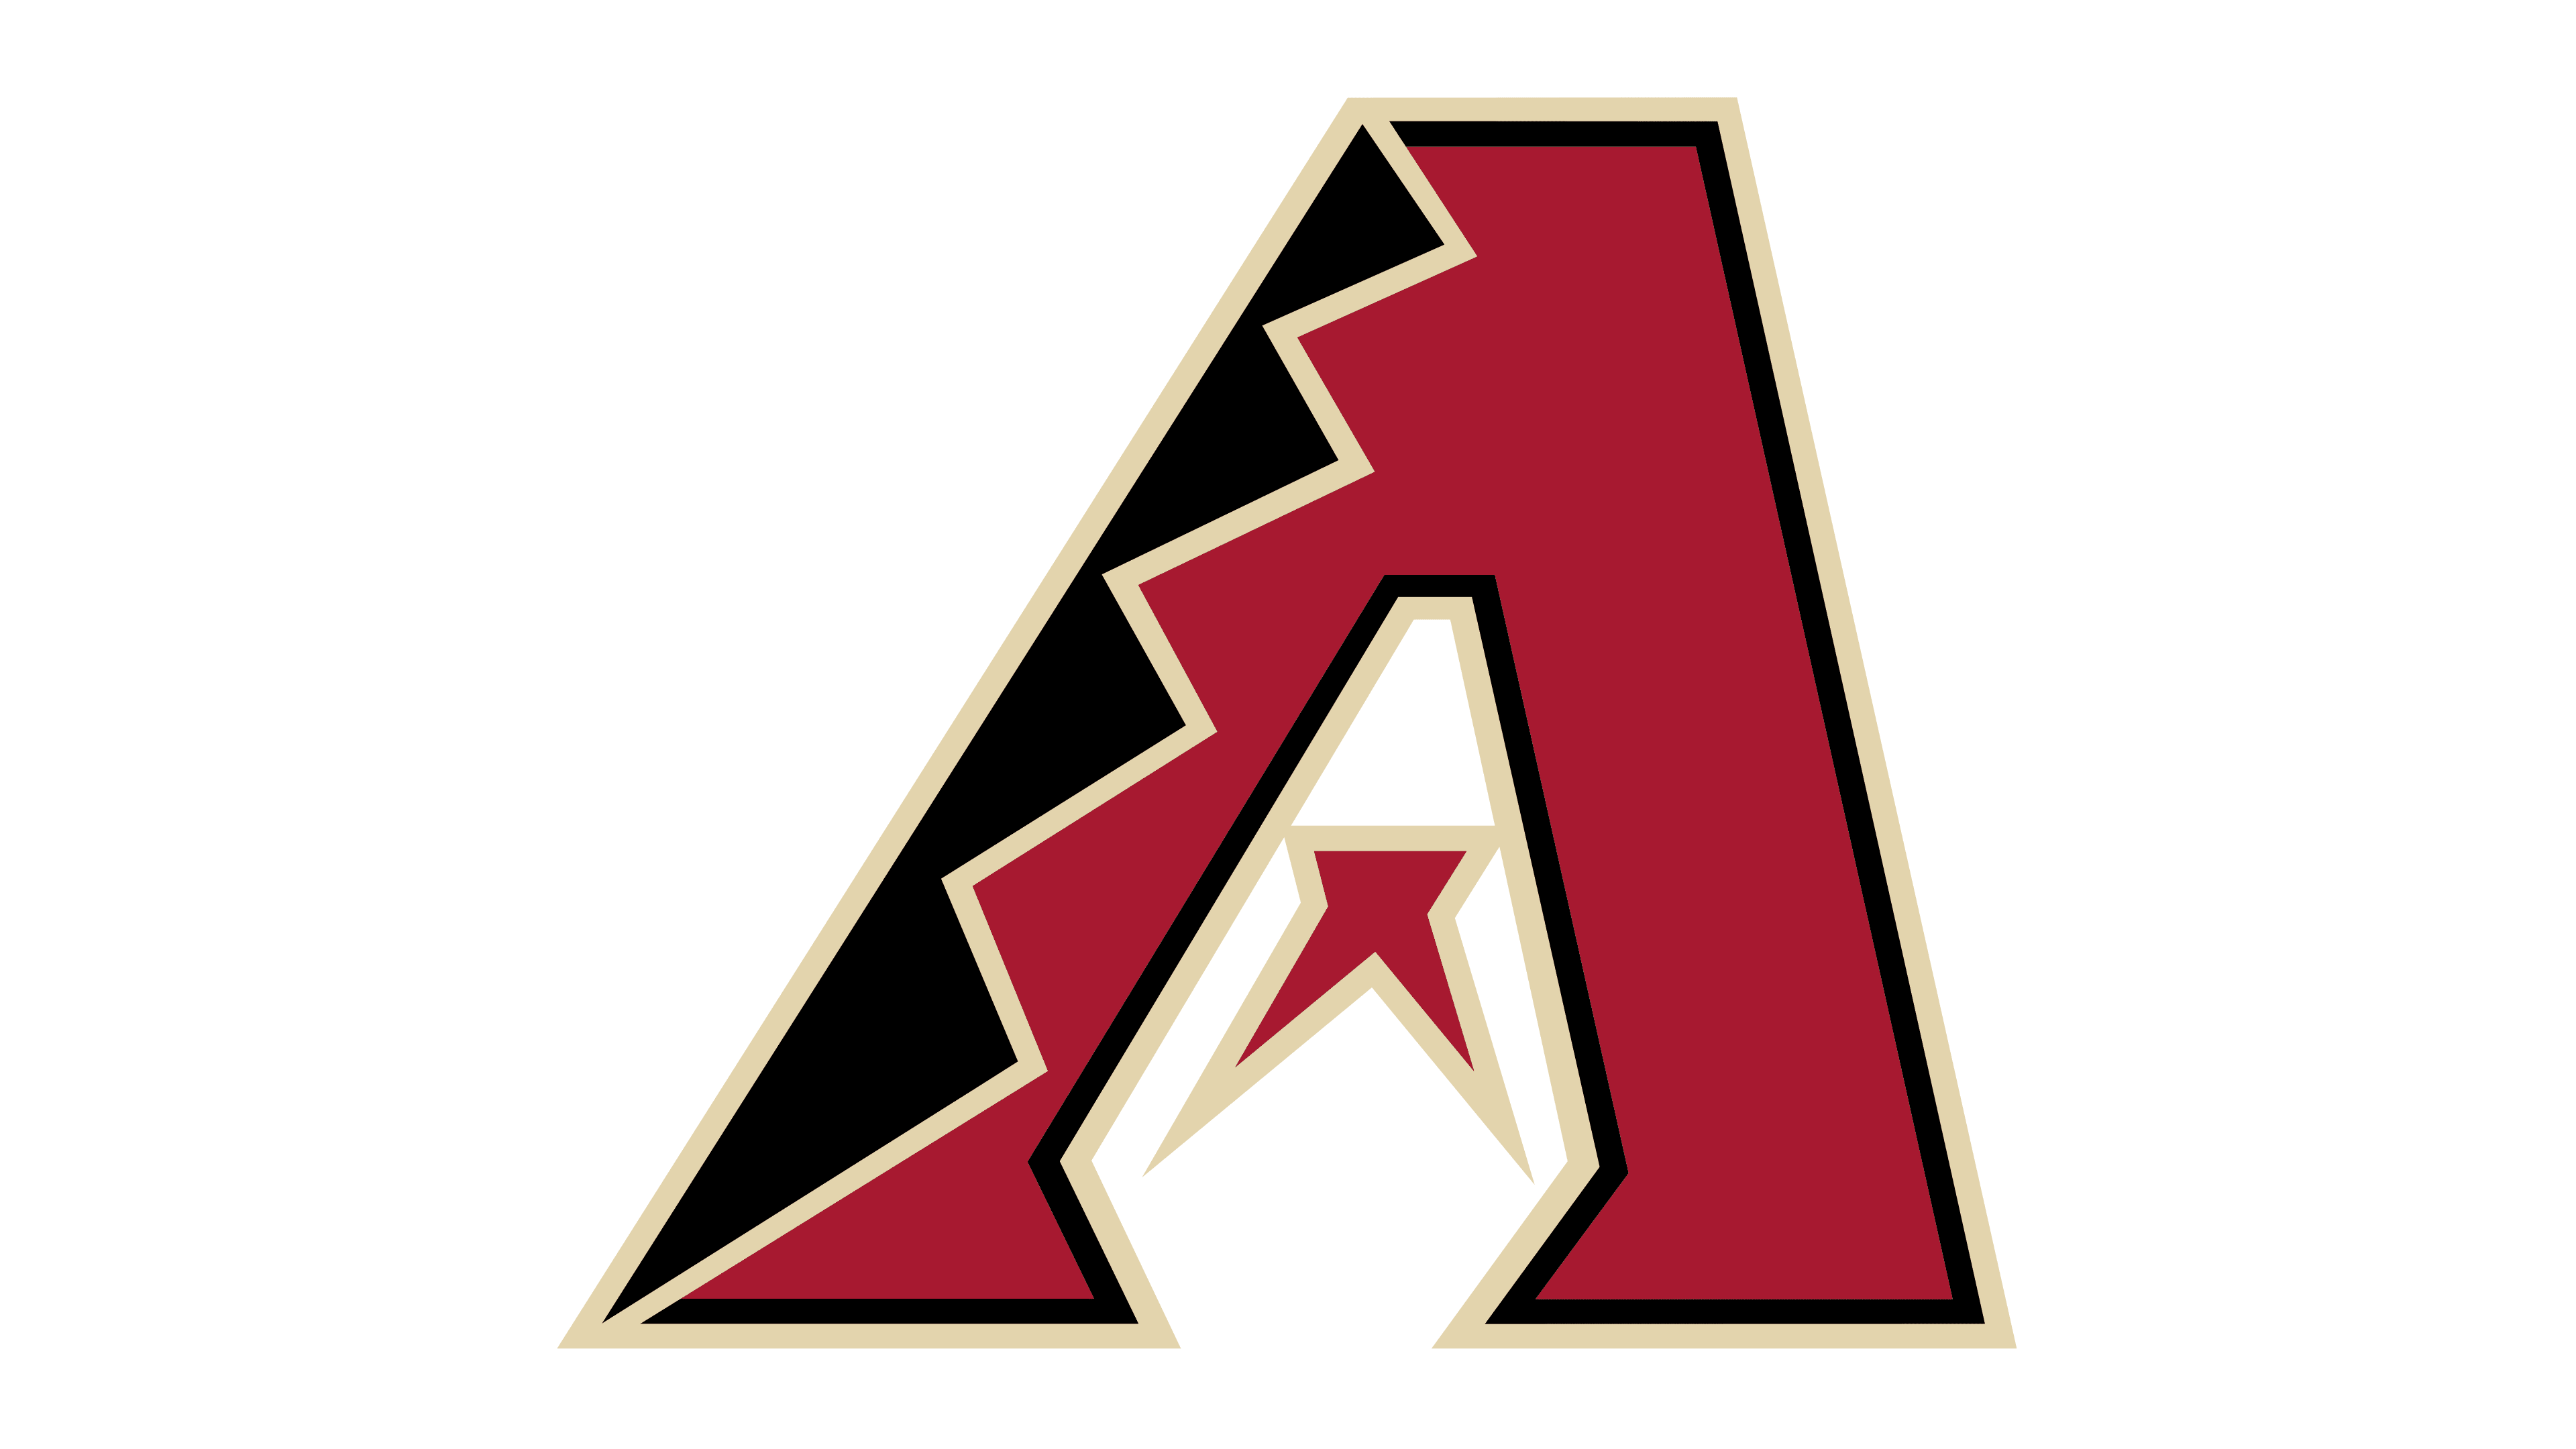 Arizona Diamondbacks Rebrand Concept : r/azdiamondbacks